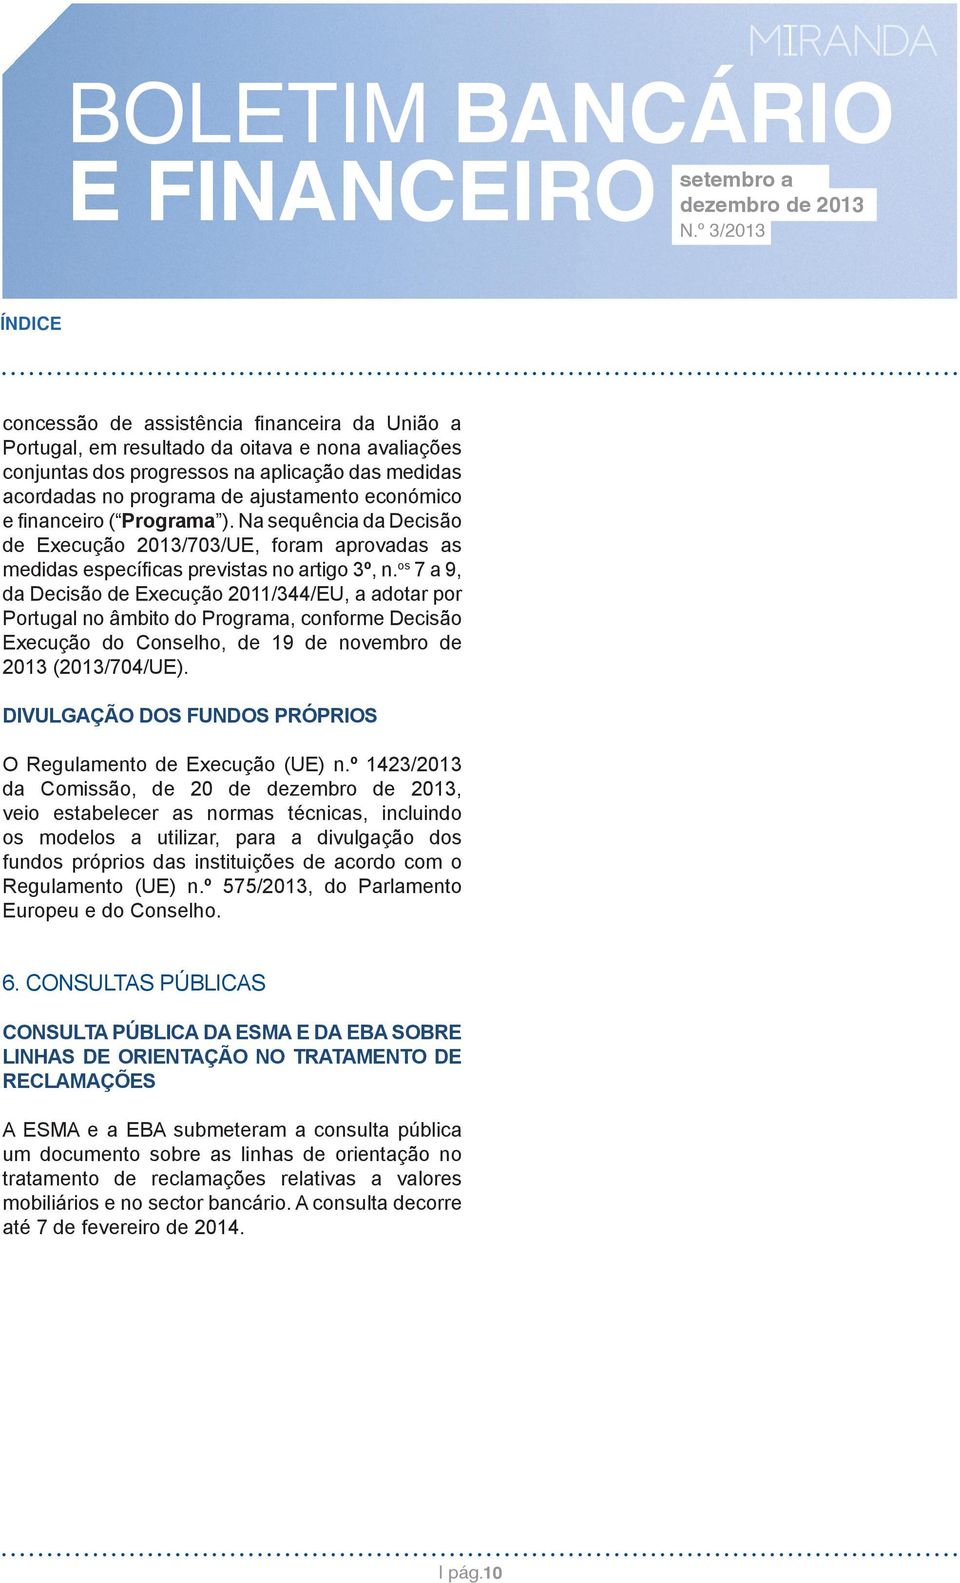 os 7 a 9, da Decisão de Execução 2011/344/EU, a adotar por Portugal no âmbito do Programa, conforme Decisão Execução do Conselho, de 19 de novembro de 2013 (2013/704/UE).